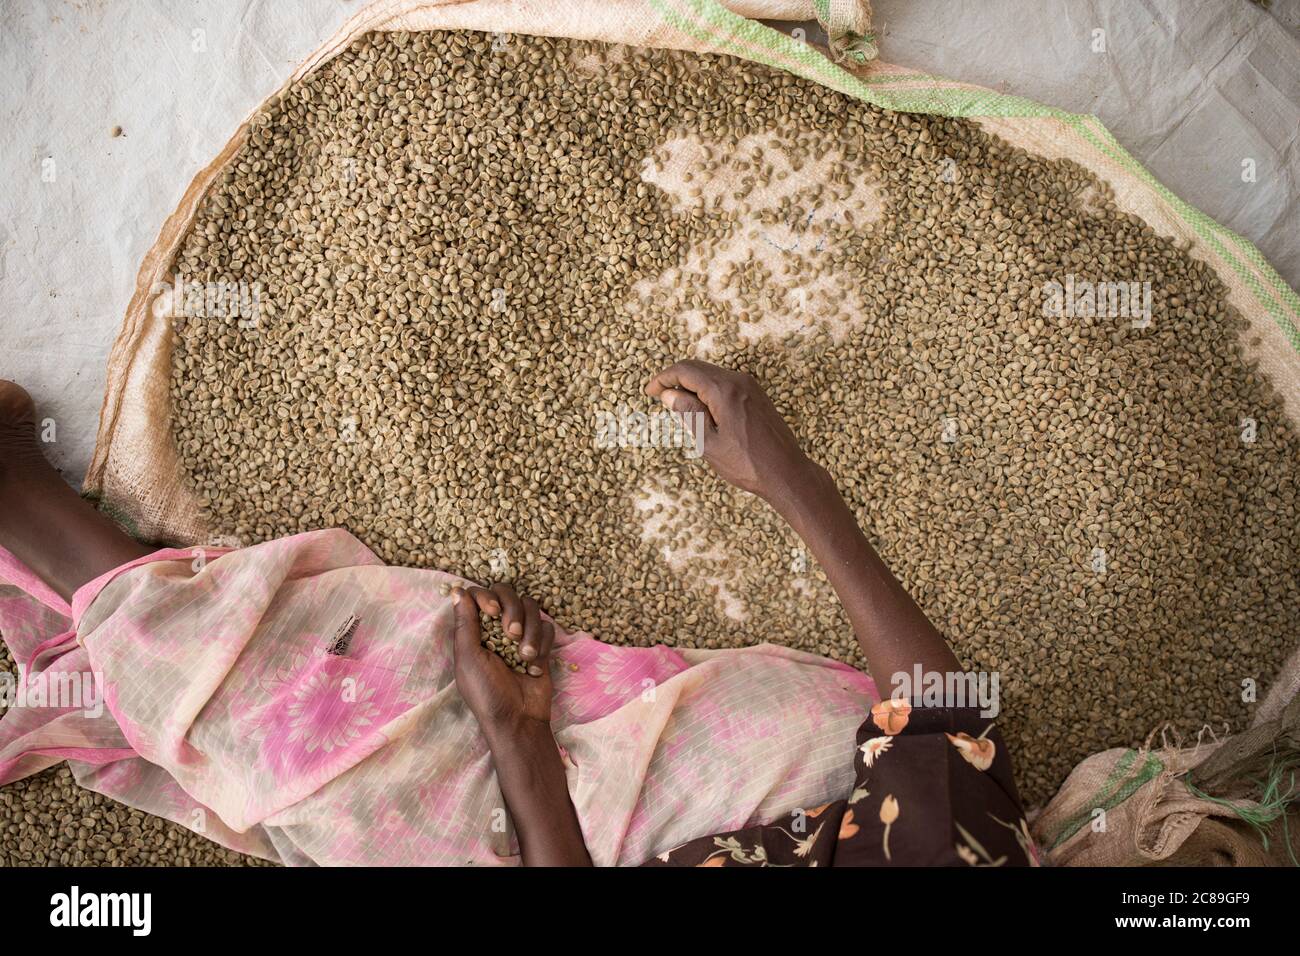 Les travailleurs vérifient la qualité des sacs de grains de café séchés dans un entrepôt coopératif de café à Mbale, en Ouganda, en Afrique de l'est. Banque D'Images